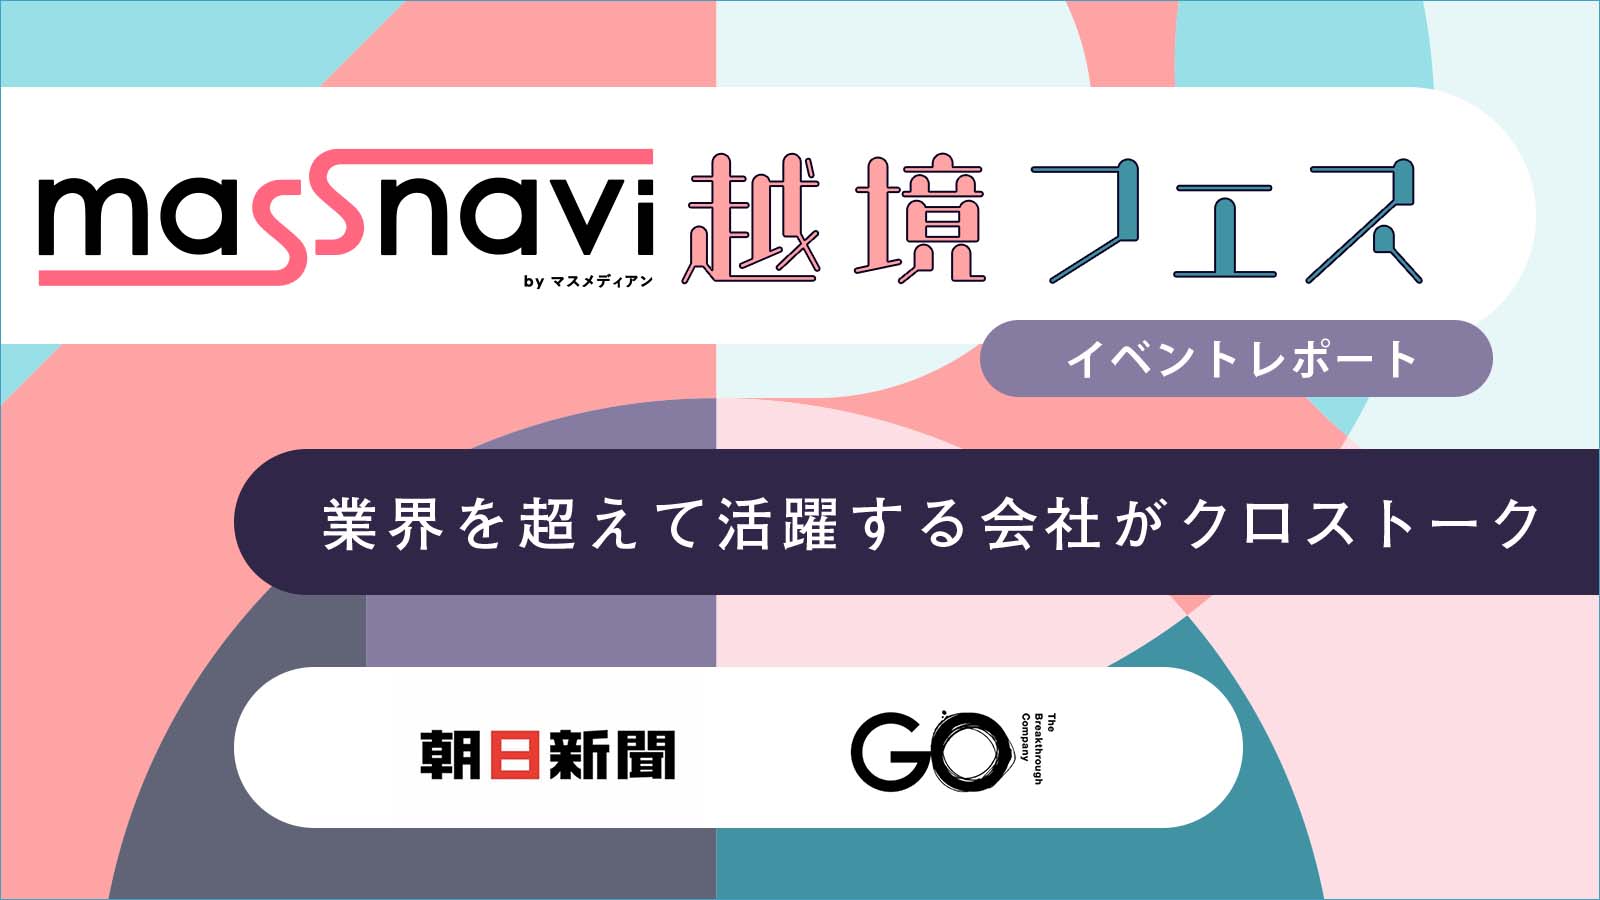 朝日新聞社×GO　「Brand News」ニュースを生む新しい広告　マスナビ越境フェスVol.1〈イベントレポート〉